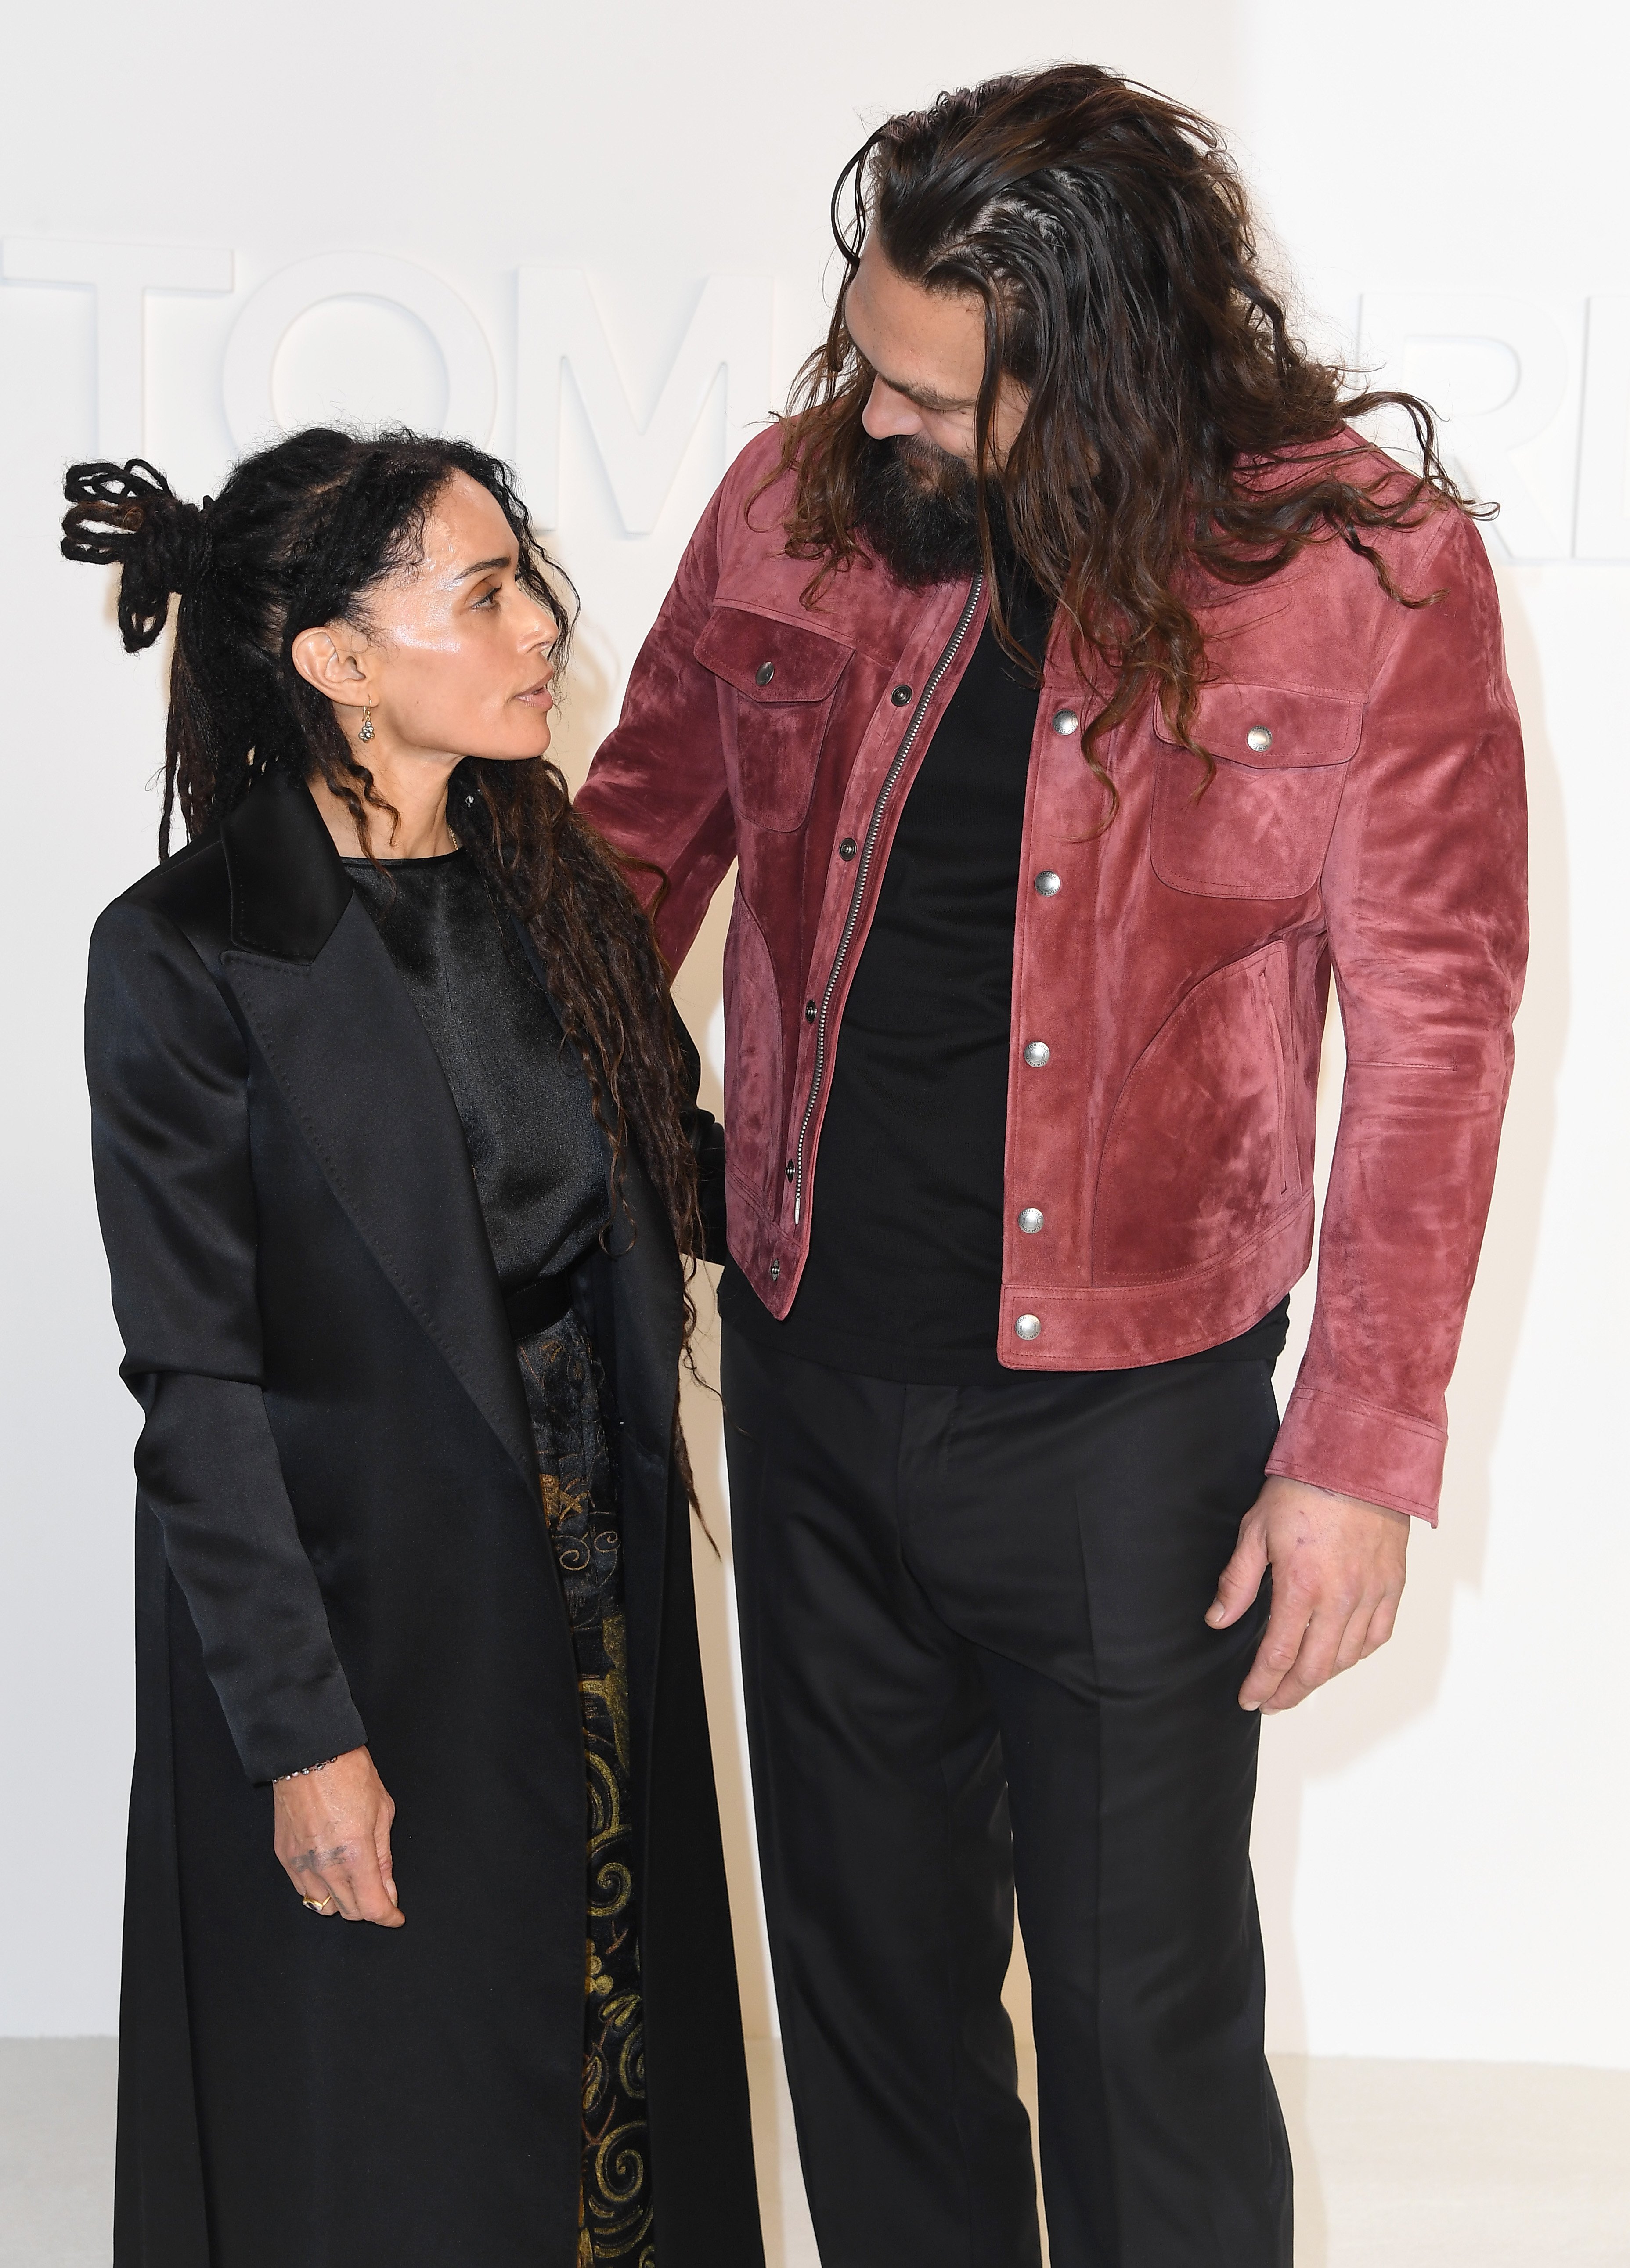 Jason Momoa y Lisa Bonet llegan al show de Tom Ford AW20 en los estudios Milk el 07 de febrero de 2020 en Hollywood, California. | Foto: Getty Images